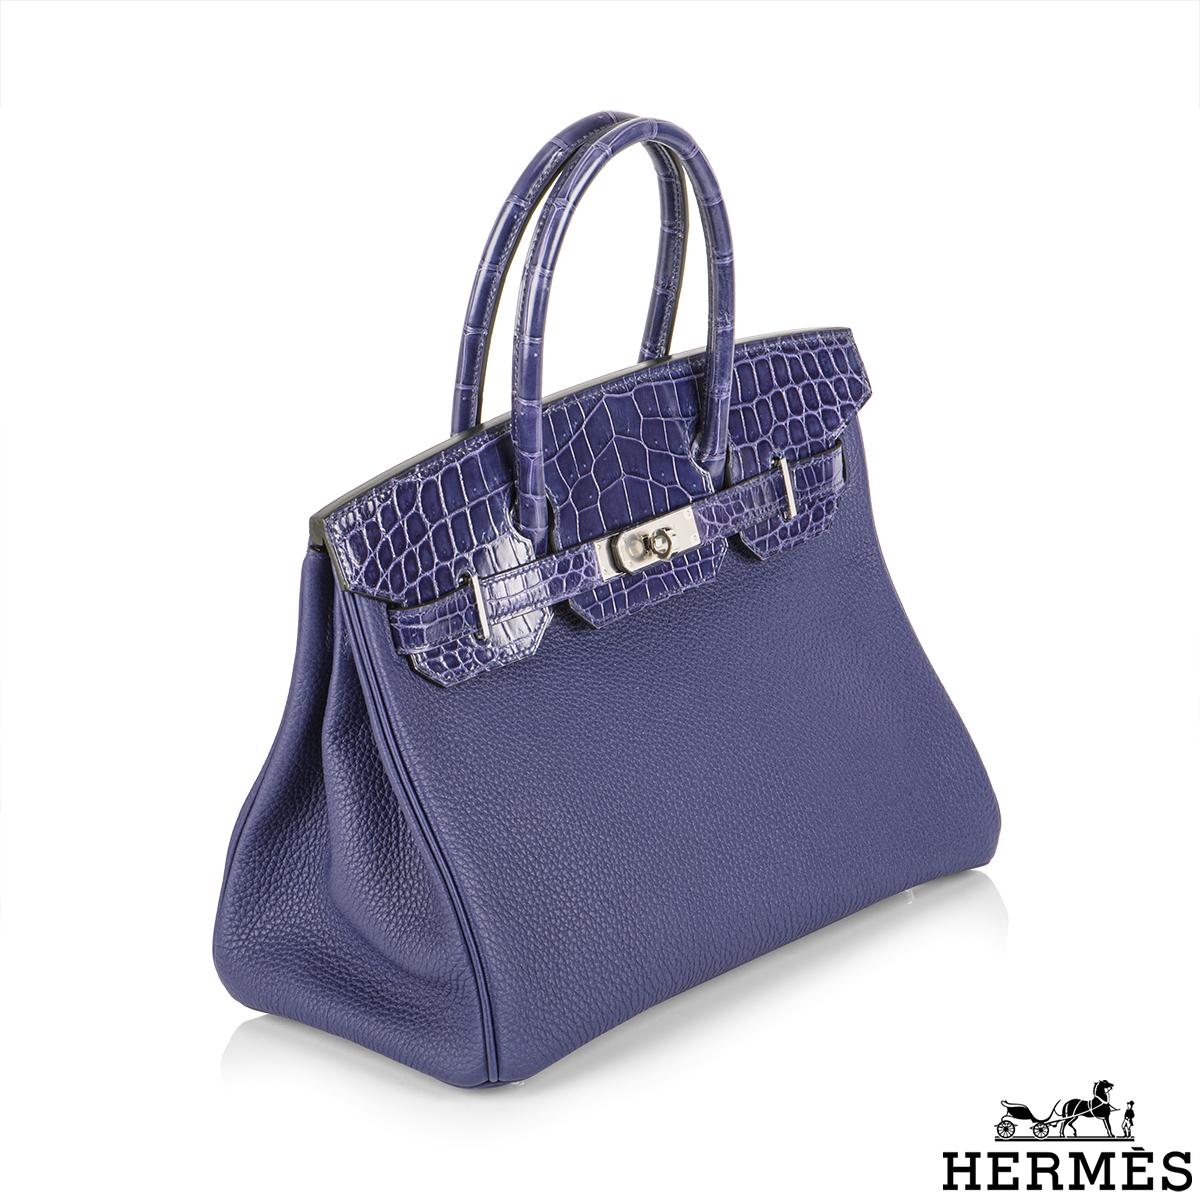 Violet Hermès Birkin 30cm Bleu Encre Touch Veau Togo/Croco Nilo Lisse